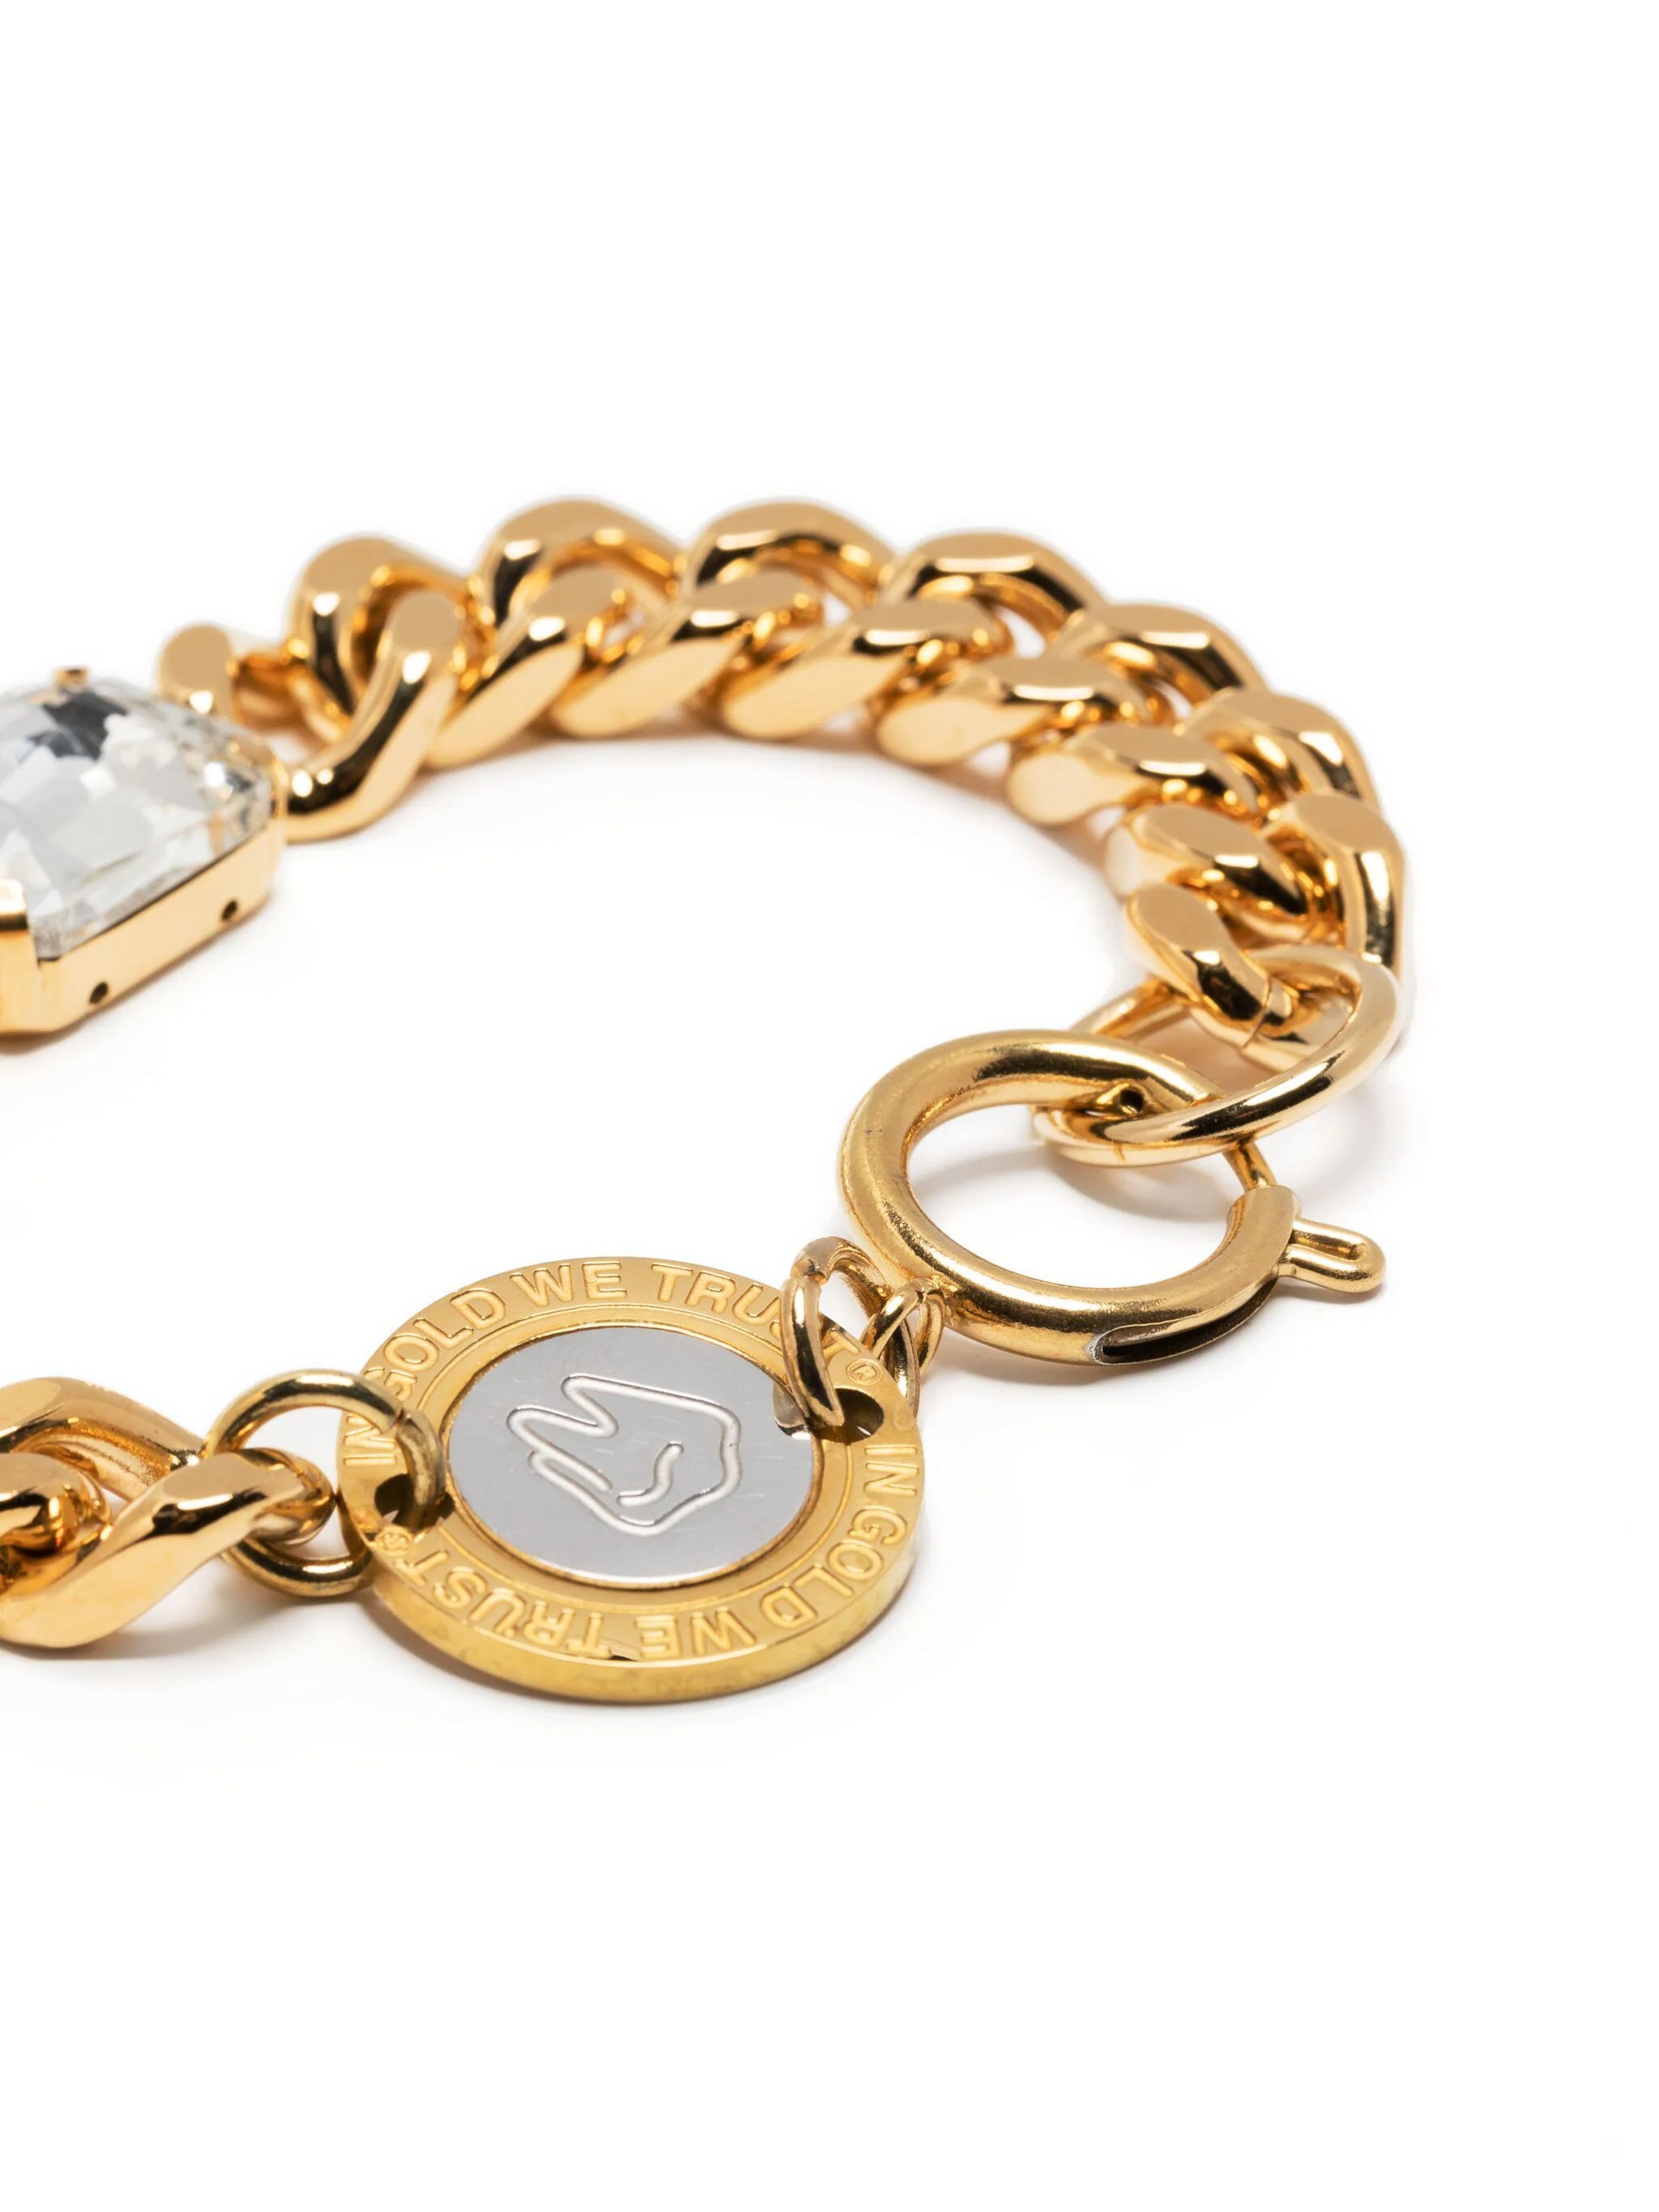 Shop In Gold We Trust Paris 18kt Gold-plated Crystal-embellished Bracelet